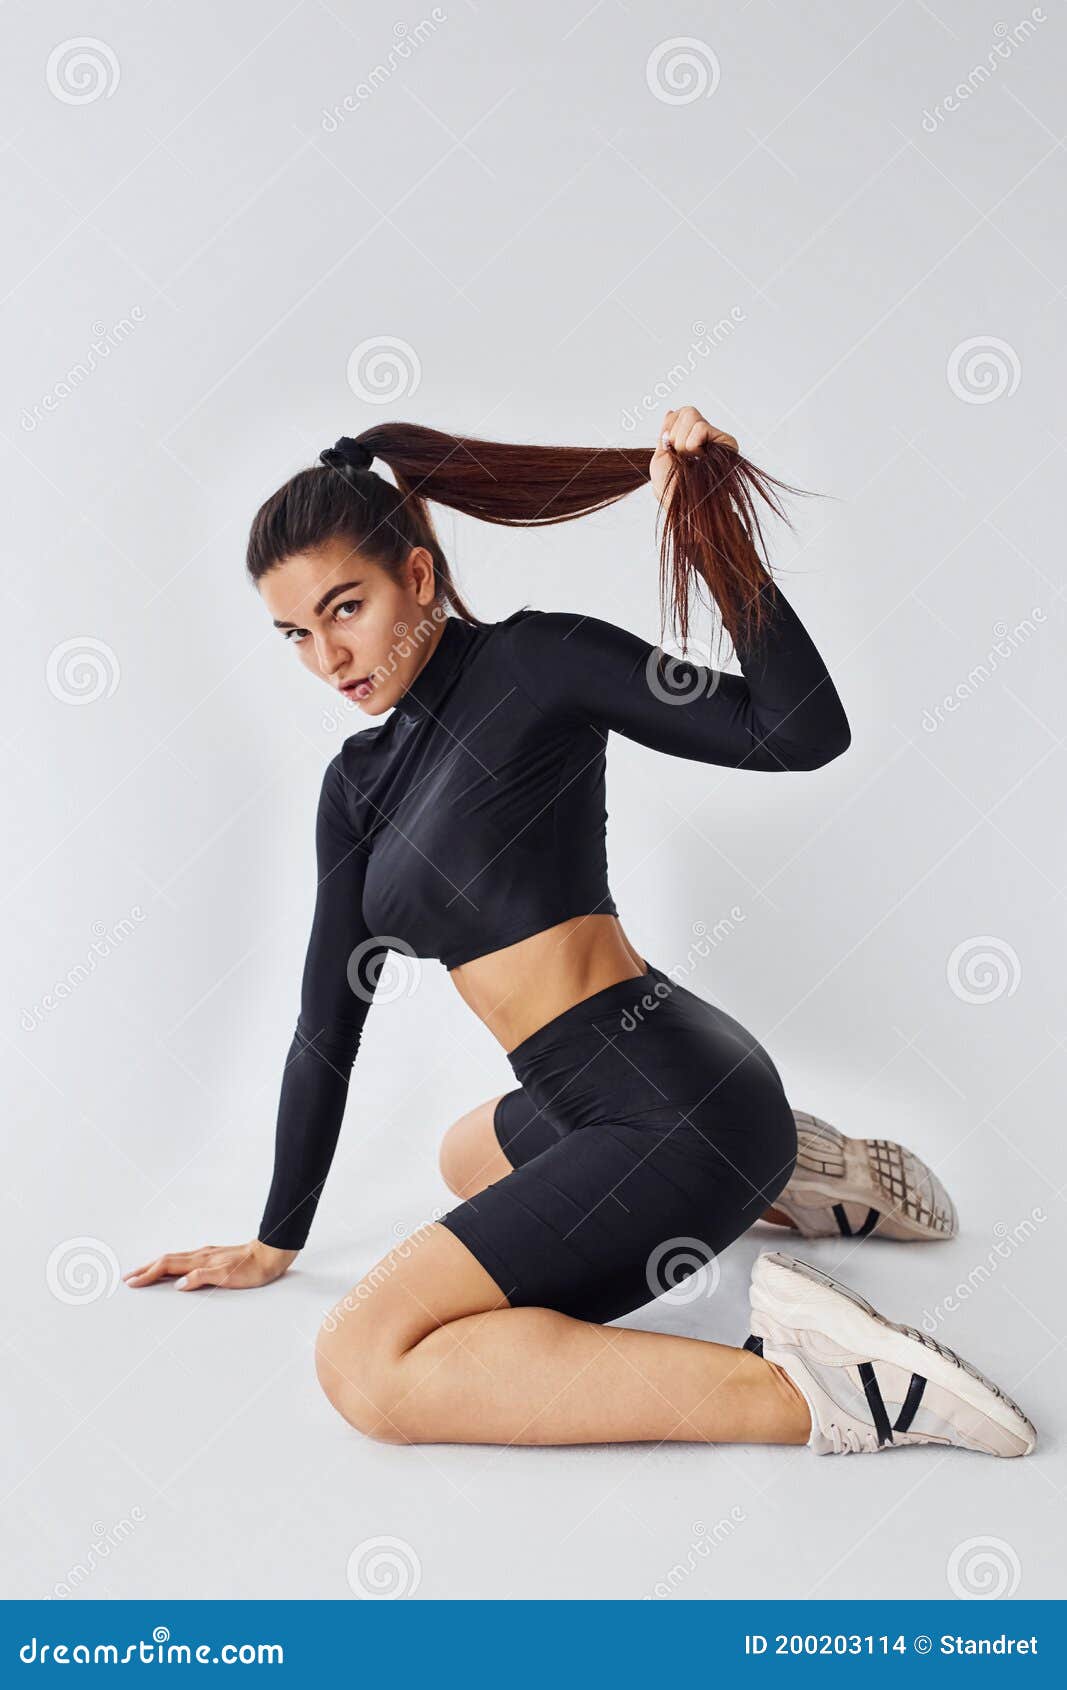 Russian girl twerk dance